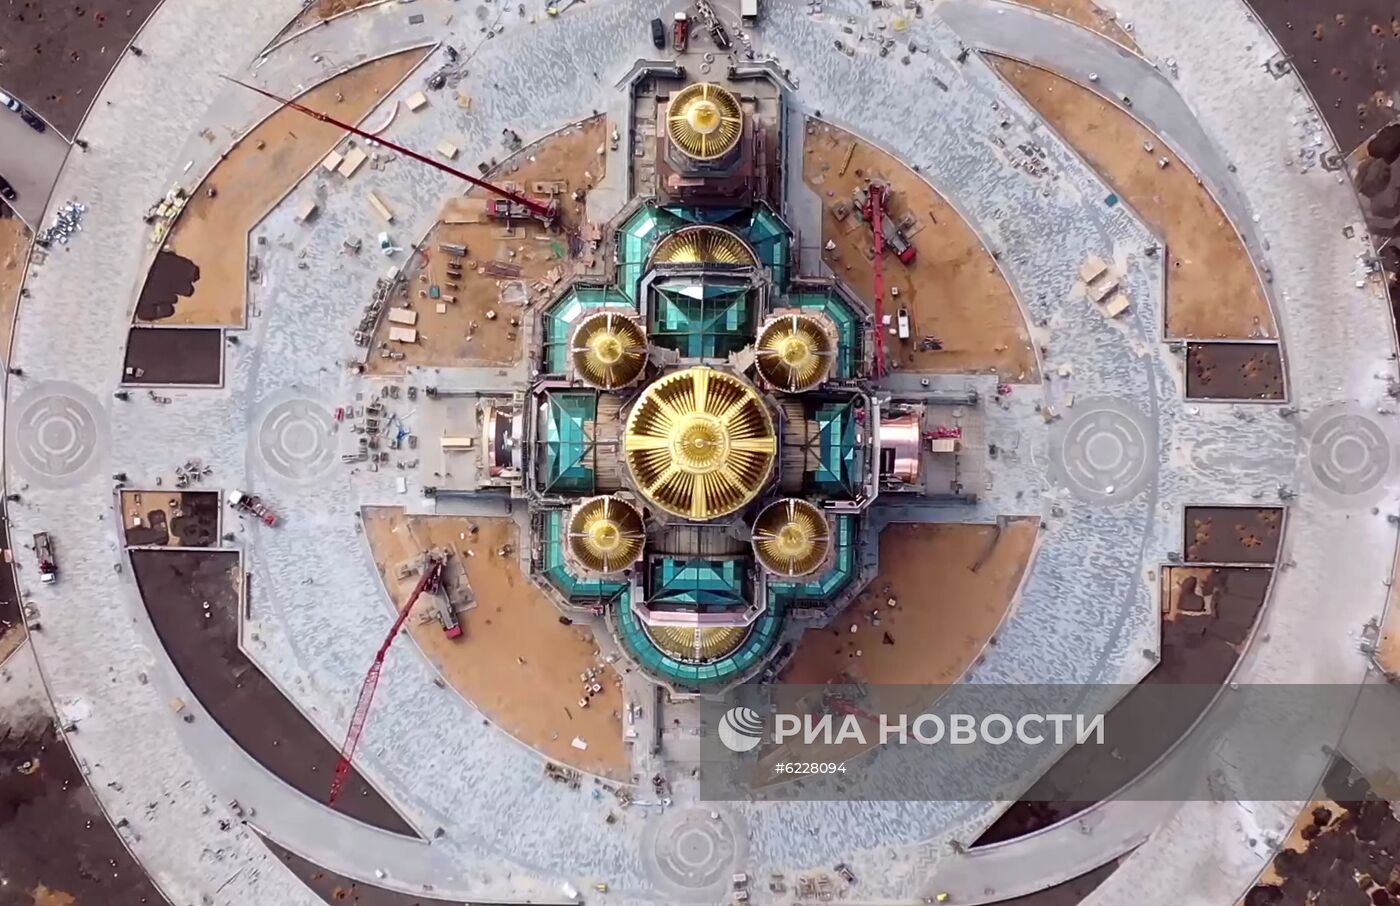 Главный храм ВС РФ